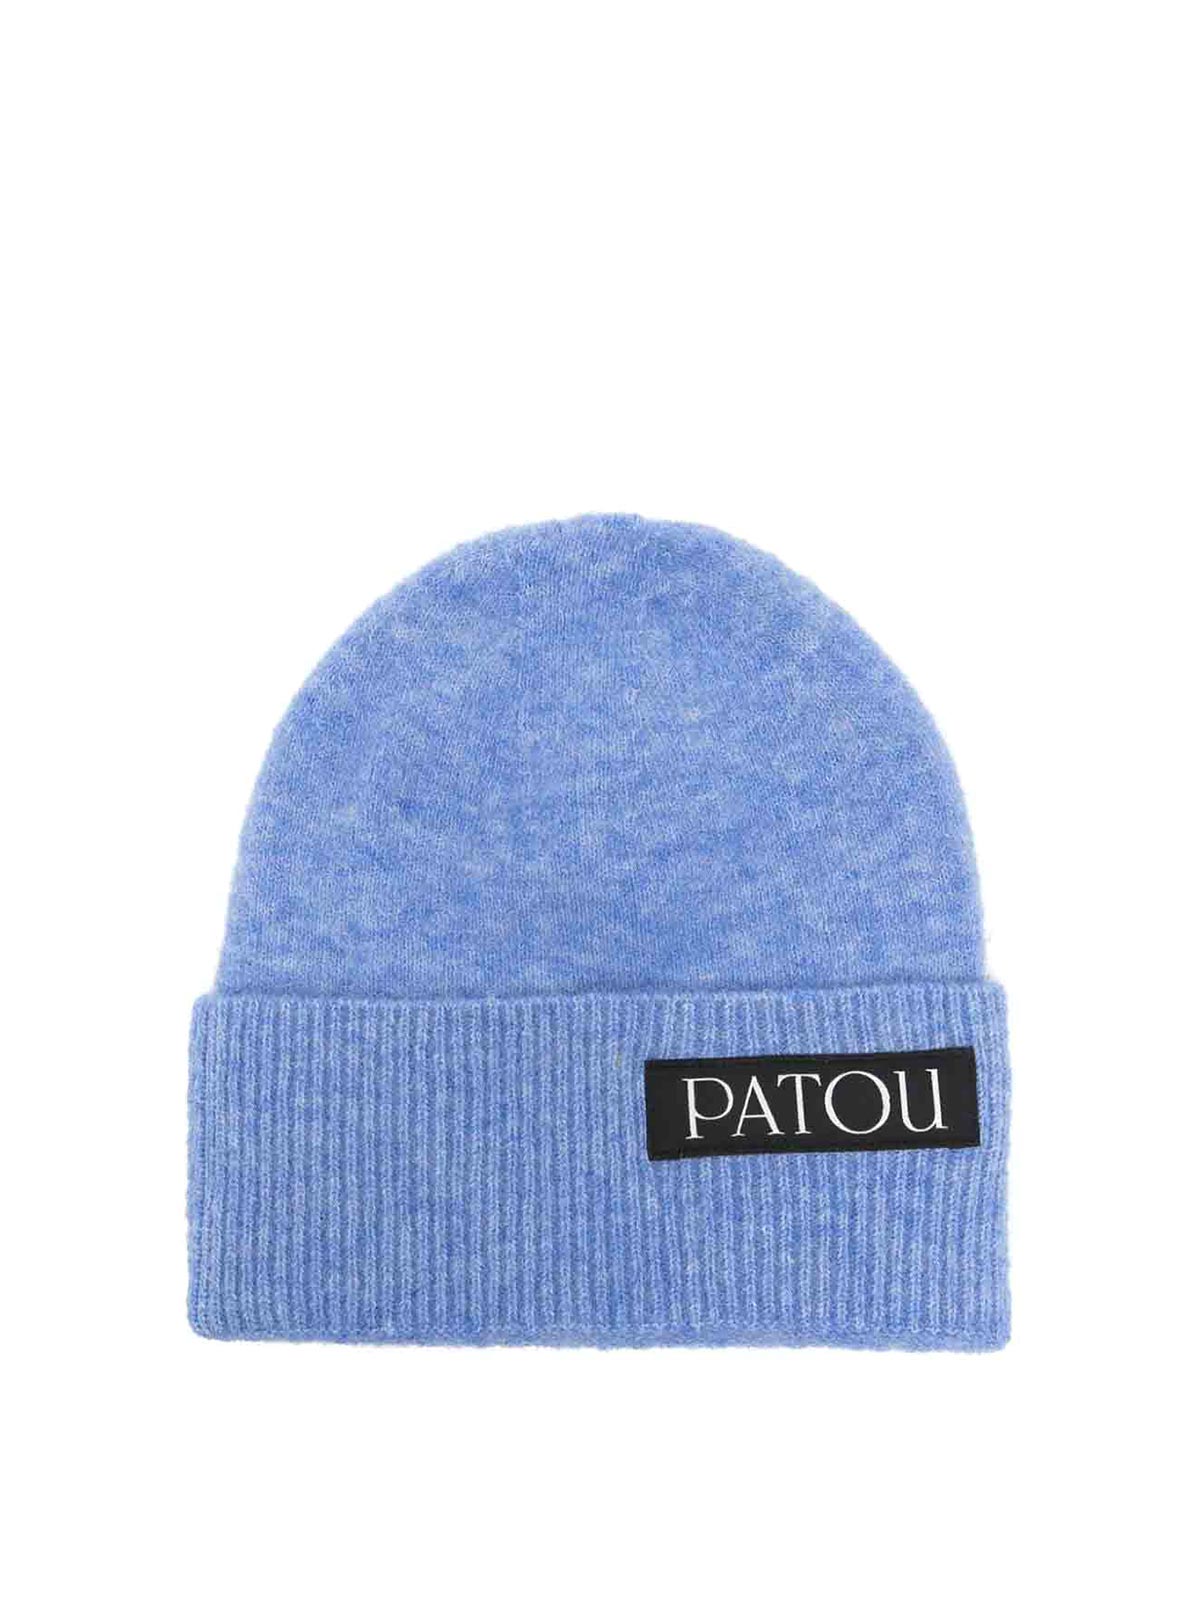 公式店舗にて1週間前に購入しPATOU ニット帽